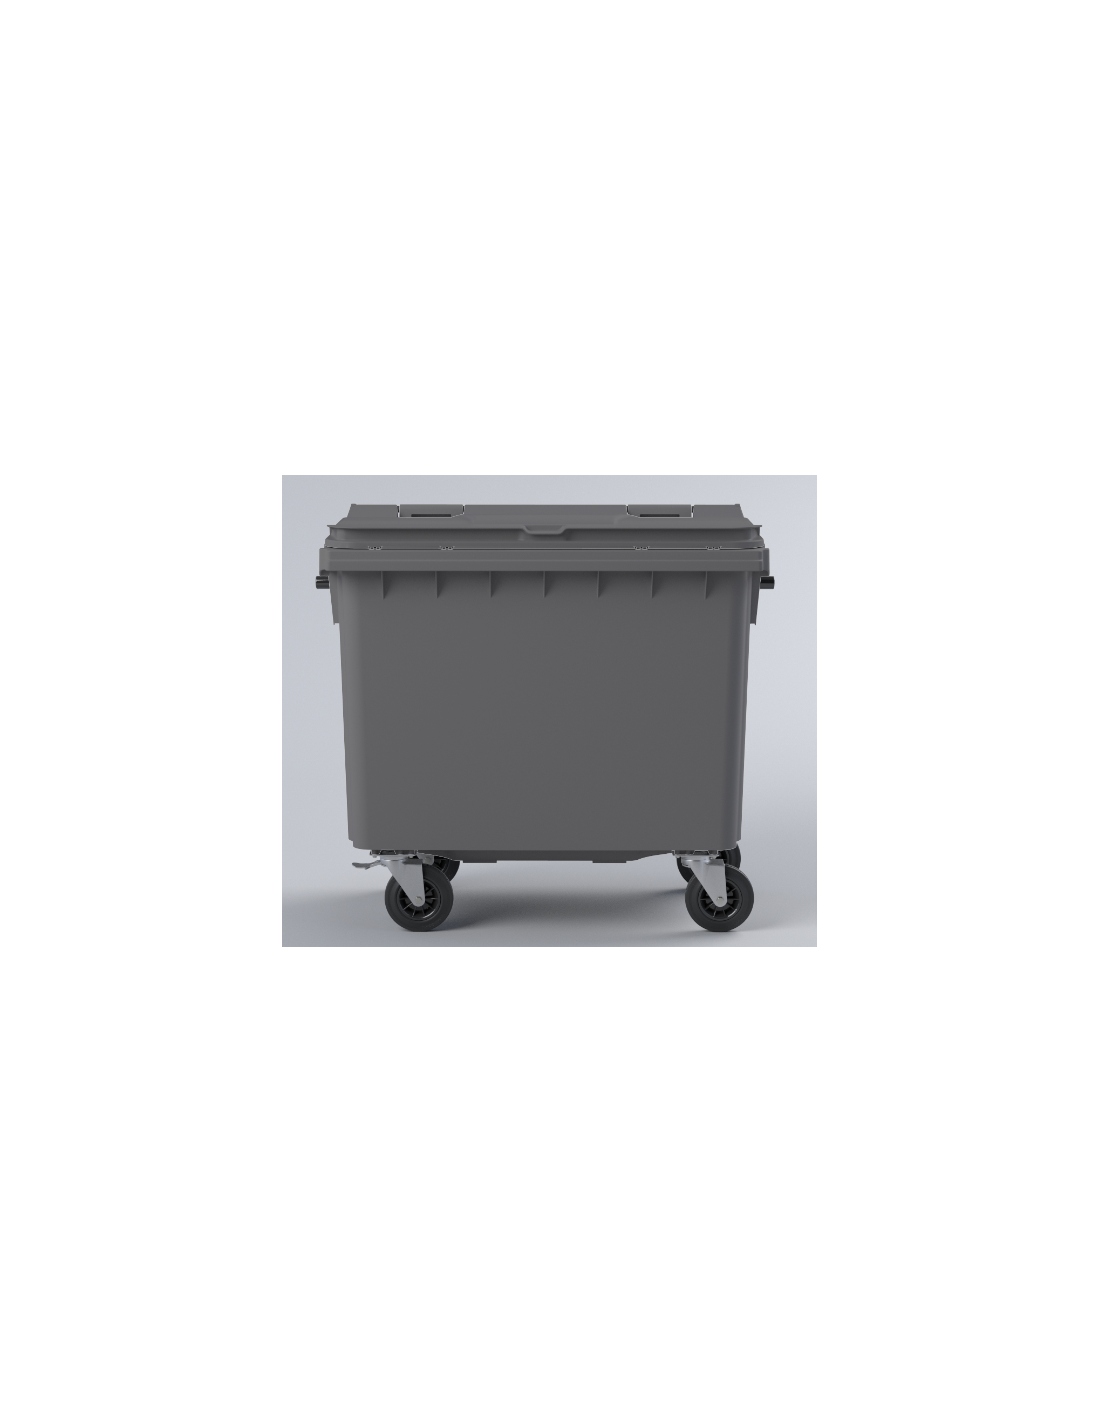 Conteneur poubelle 660 litres pour tri sélectif : Devis sur Techni-Contact  - conteneurs 4 roues pour collecte des déchets